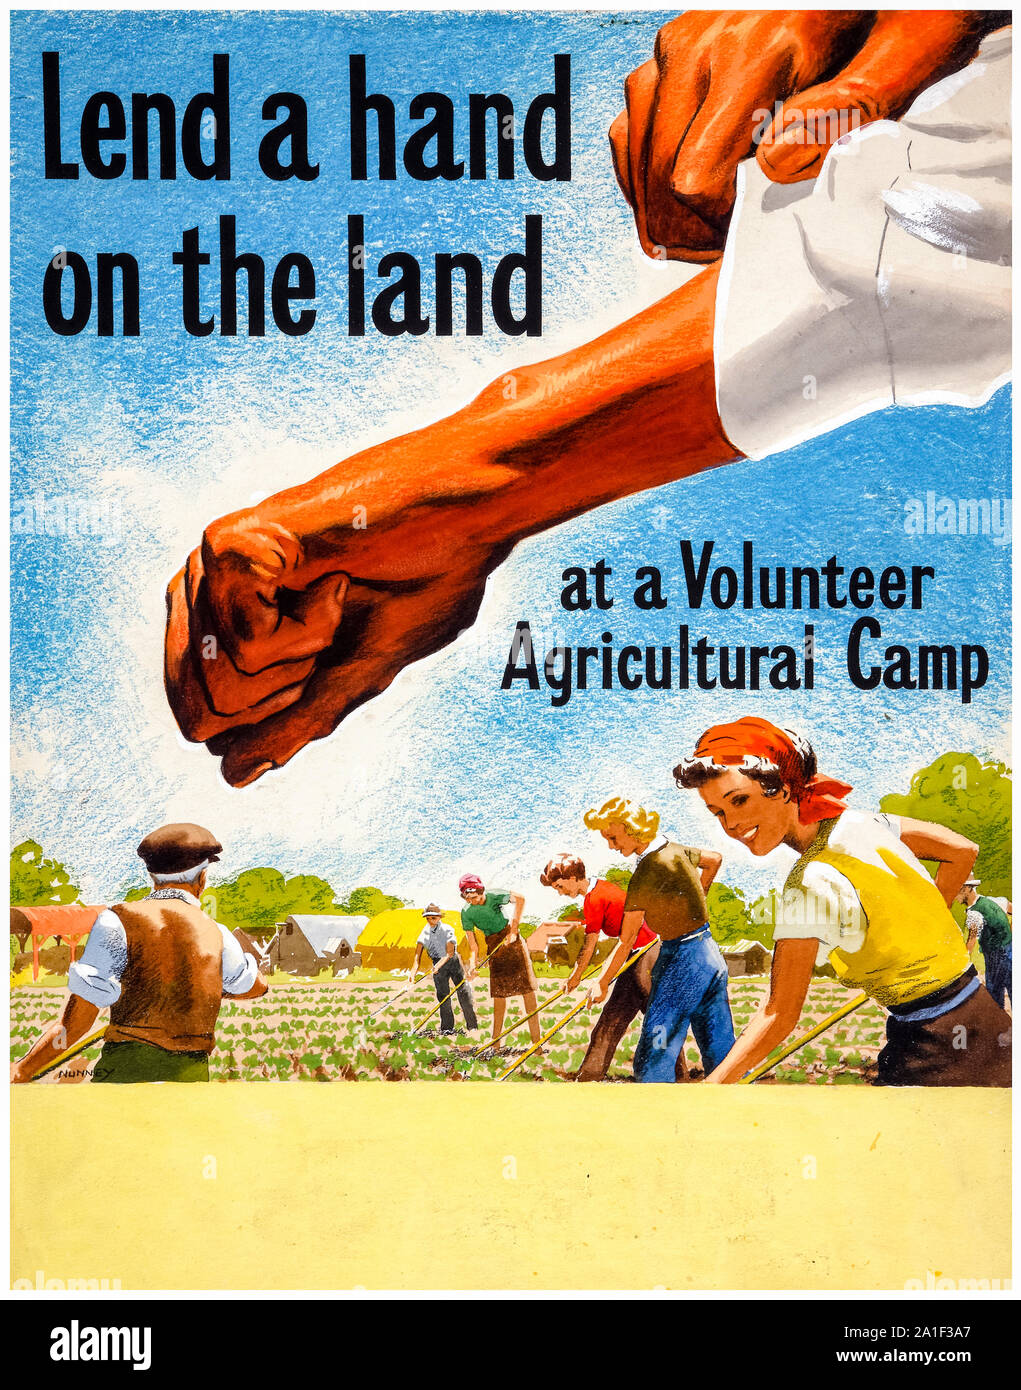 Britische, WW2, Lebensmittelproduktion, eine Hand auf dem Land bei einem Freiwilligen landwirtschaftliche Lager, Poster, 1939-1946 Stockfoto